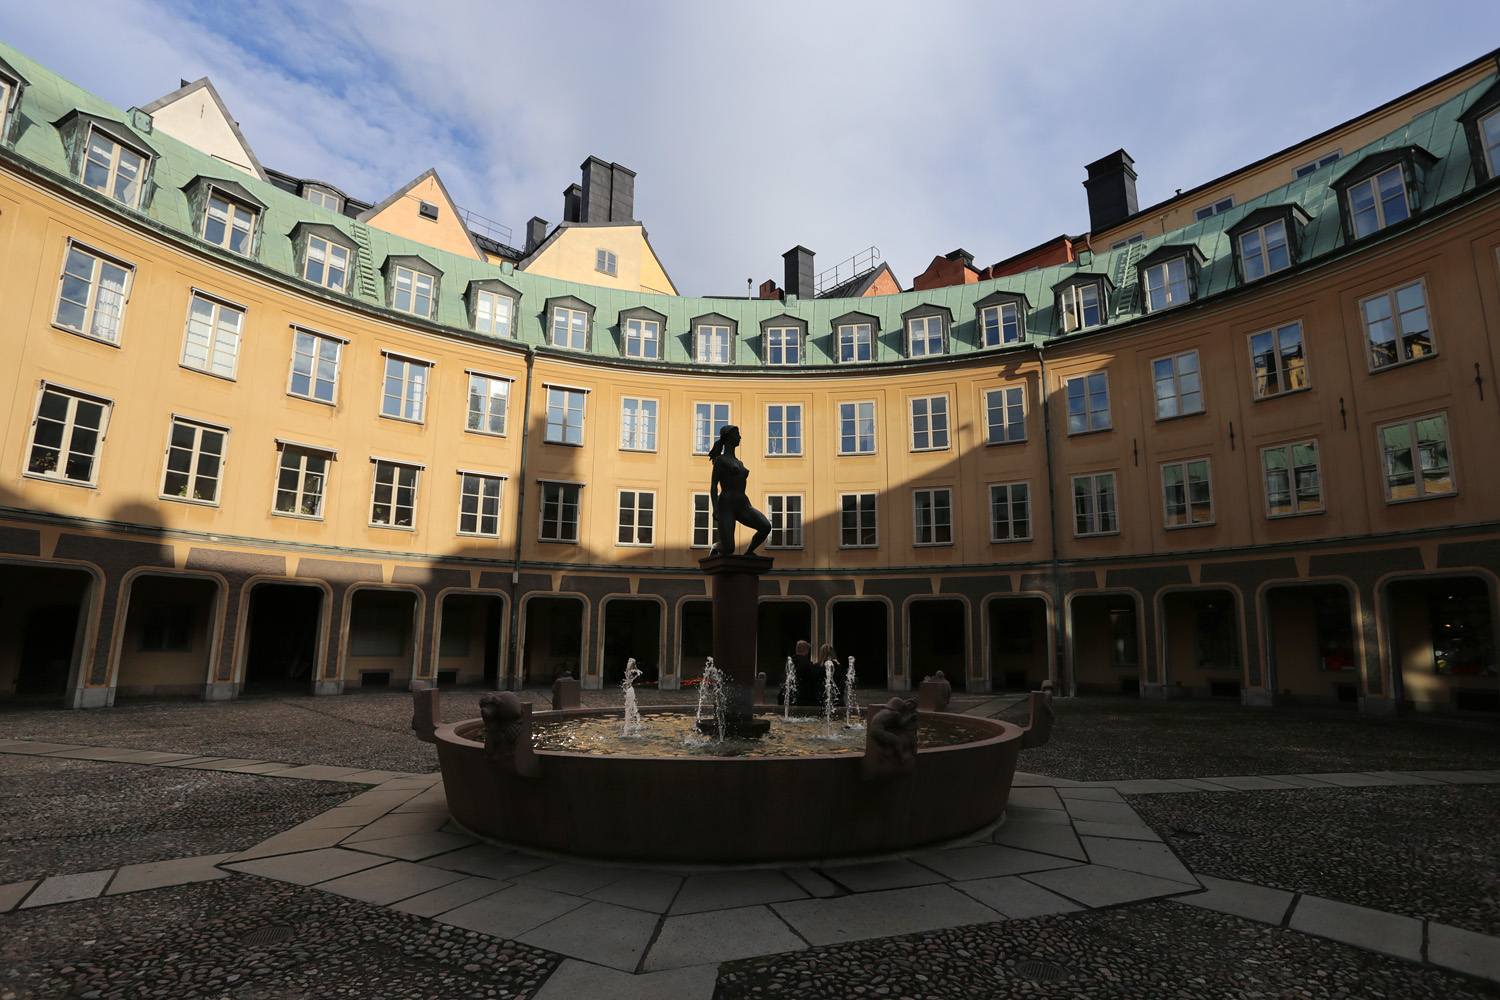 bill-hocker-brantingtorget-stockholm-sweden-2019